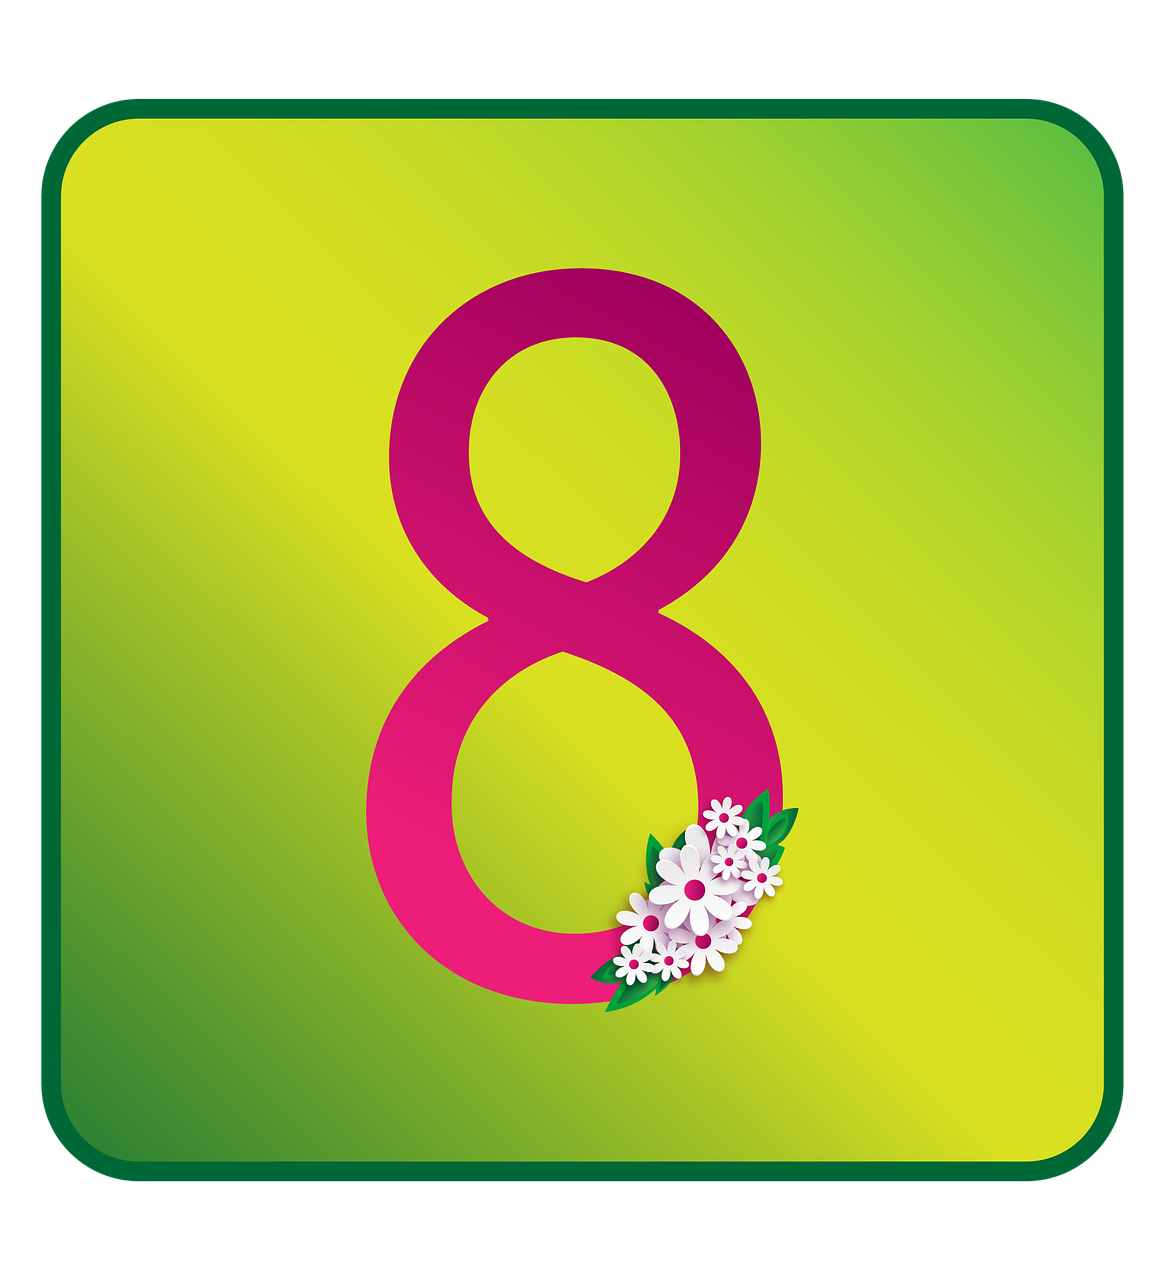 Gėlės, Kovo 8 D ., Simbolis, Kompozicija, Pasveikinimas, Atvirukas, Reklama, Dizainui, Dizainas, Grafika